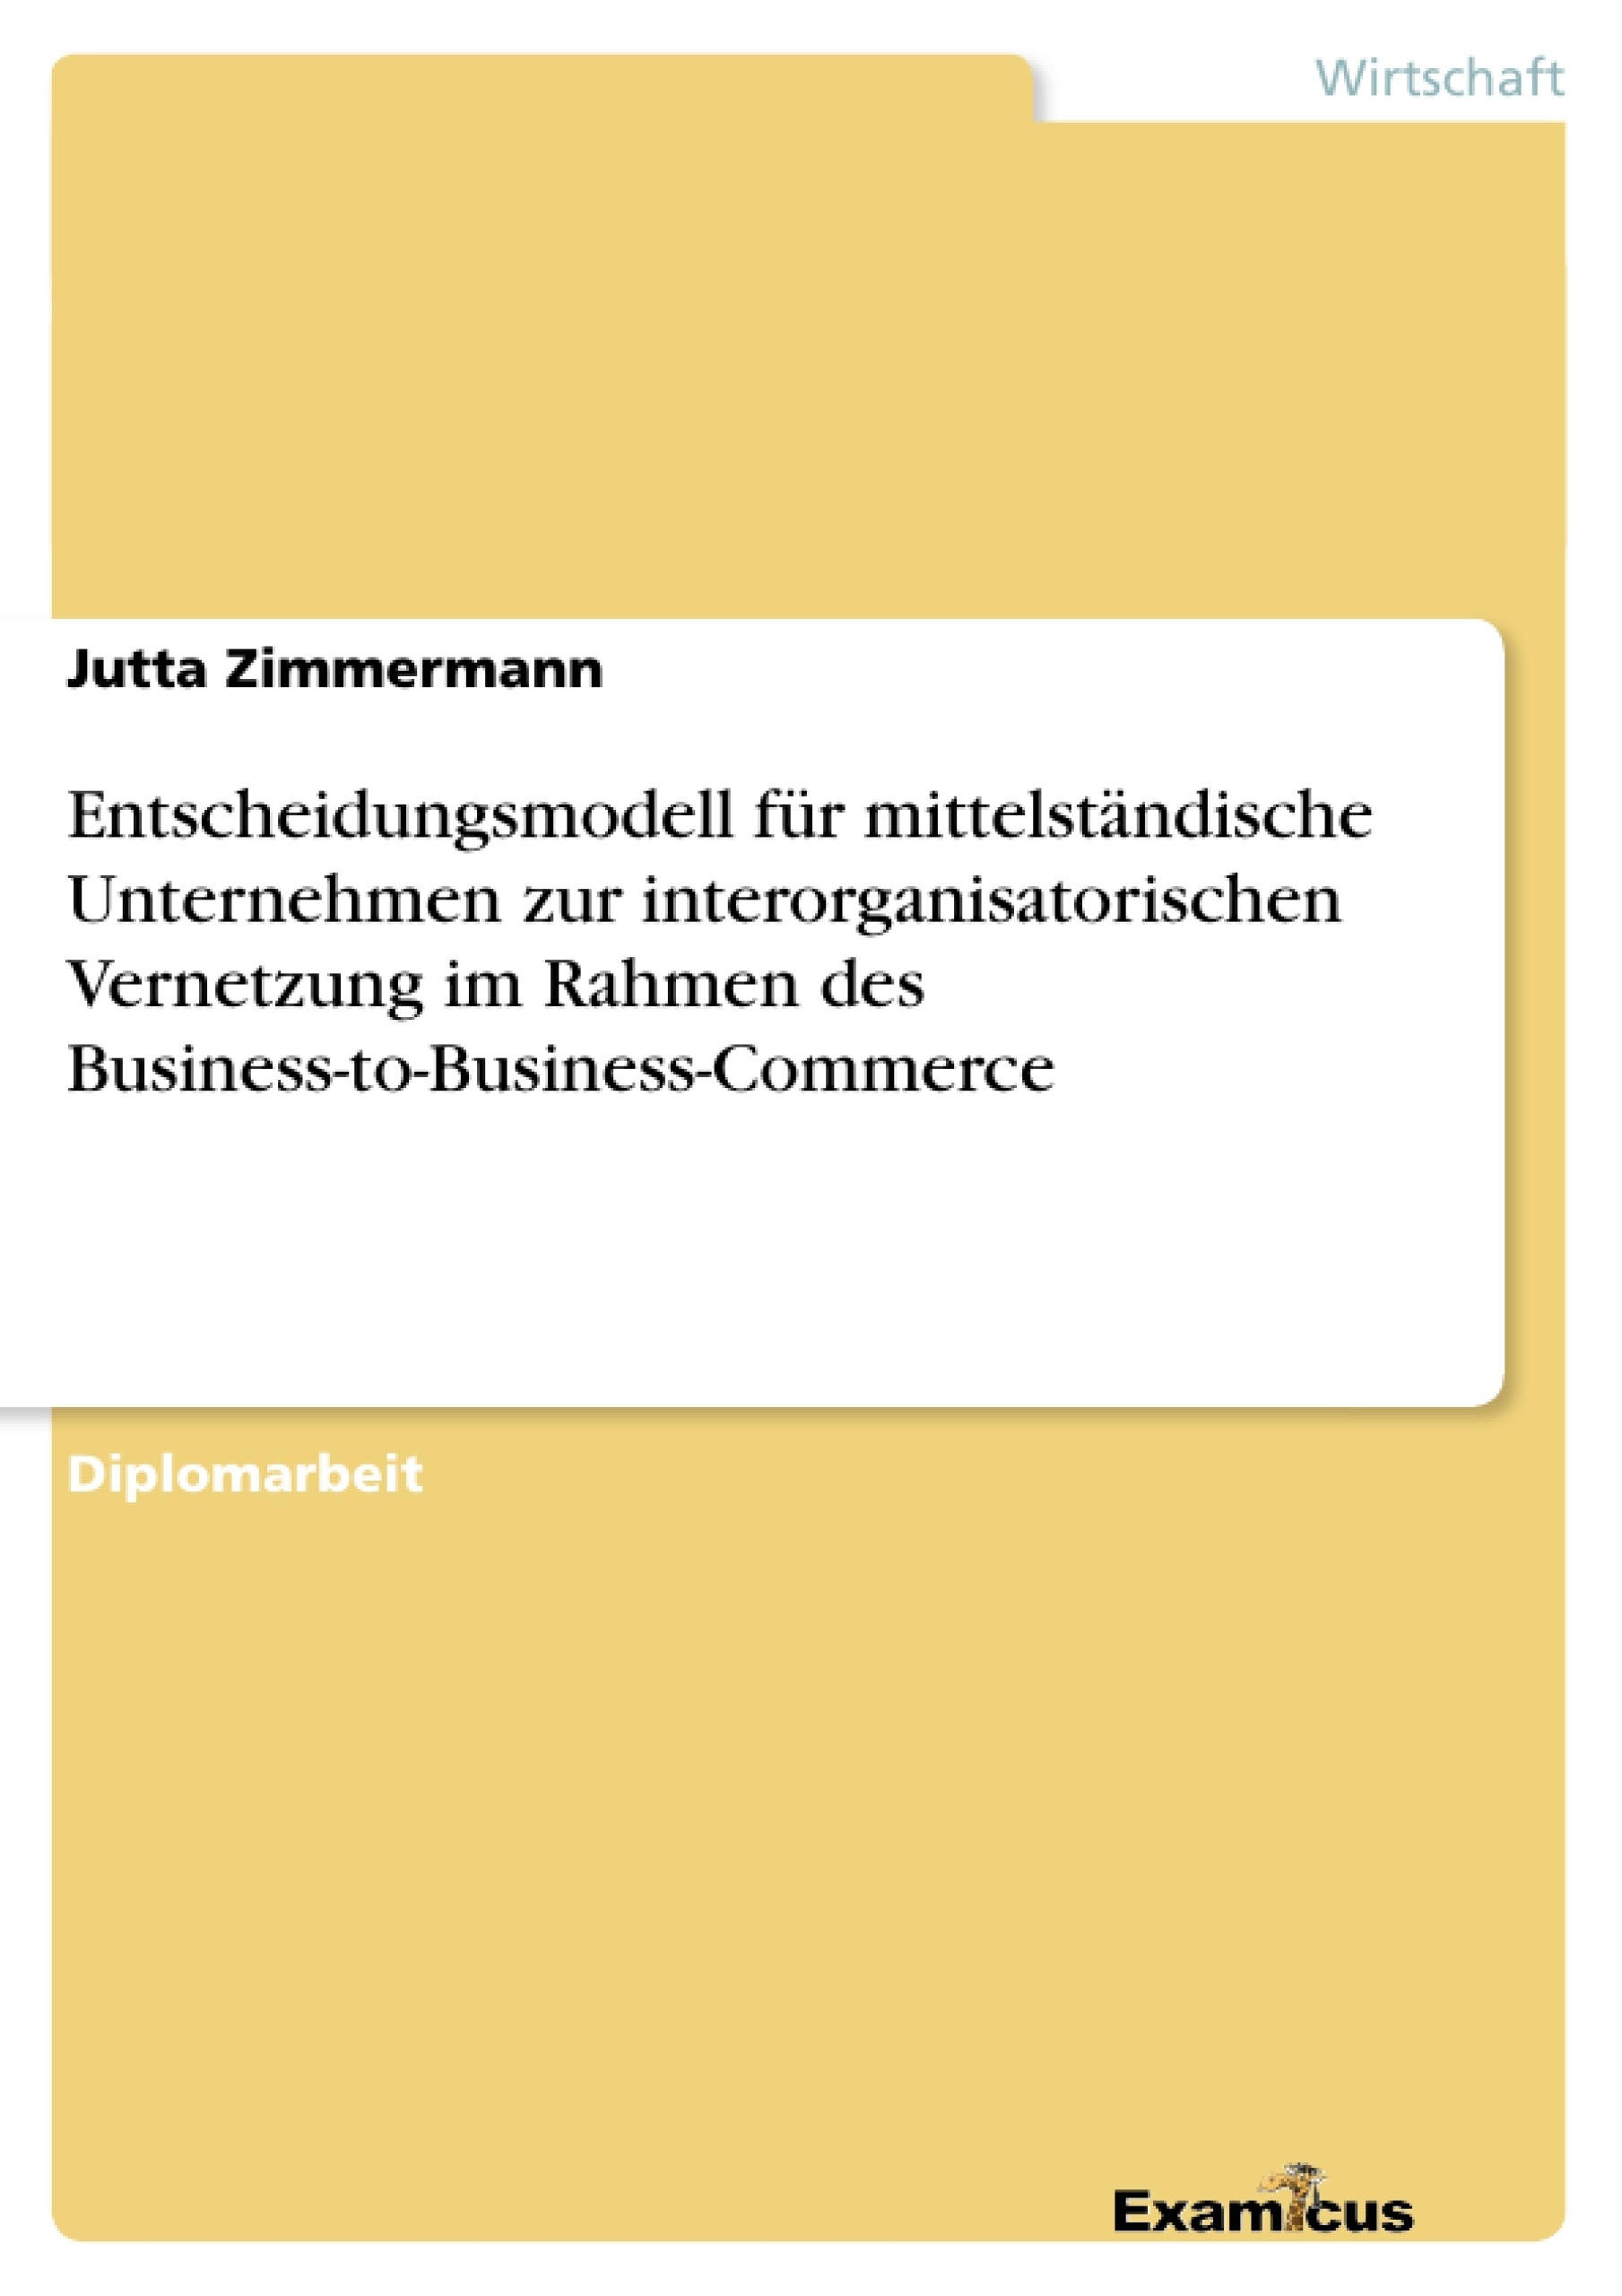 Title: Entscheidungsmodell für mittelständische Unternehmen zur interorganisatorischen Vernetzung im Rahmen des Business-to-Business-Commerce